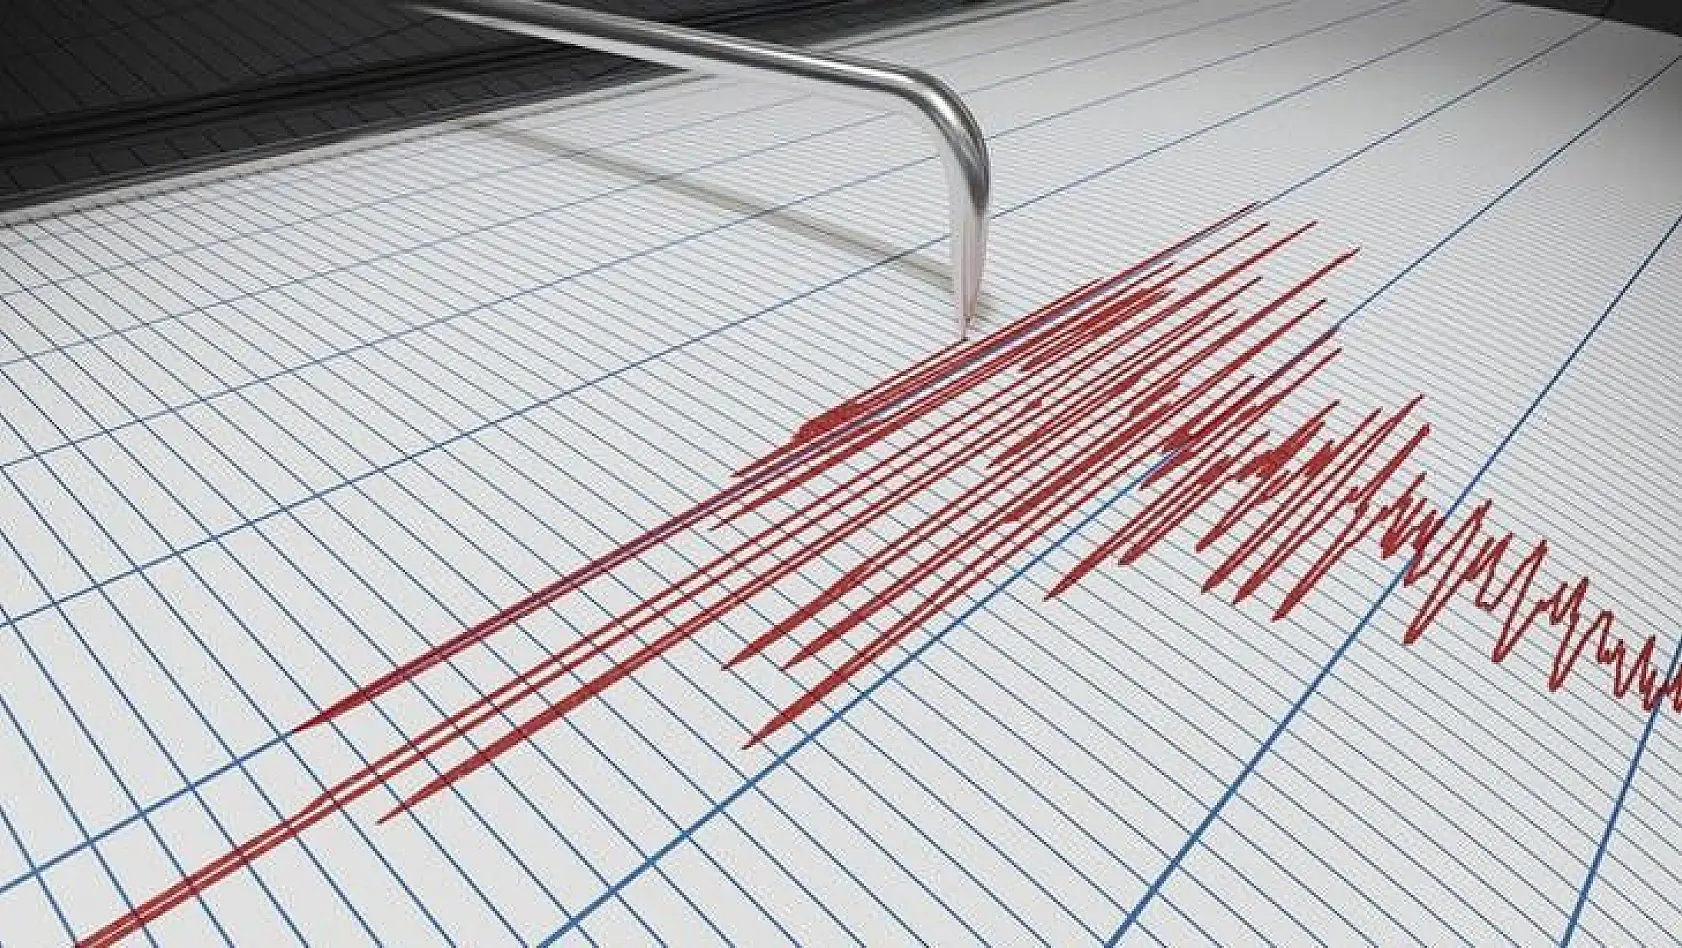 Bingöl'de 4.1 şiddetinde bir deprem meydana geldi